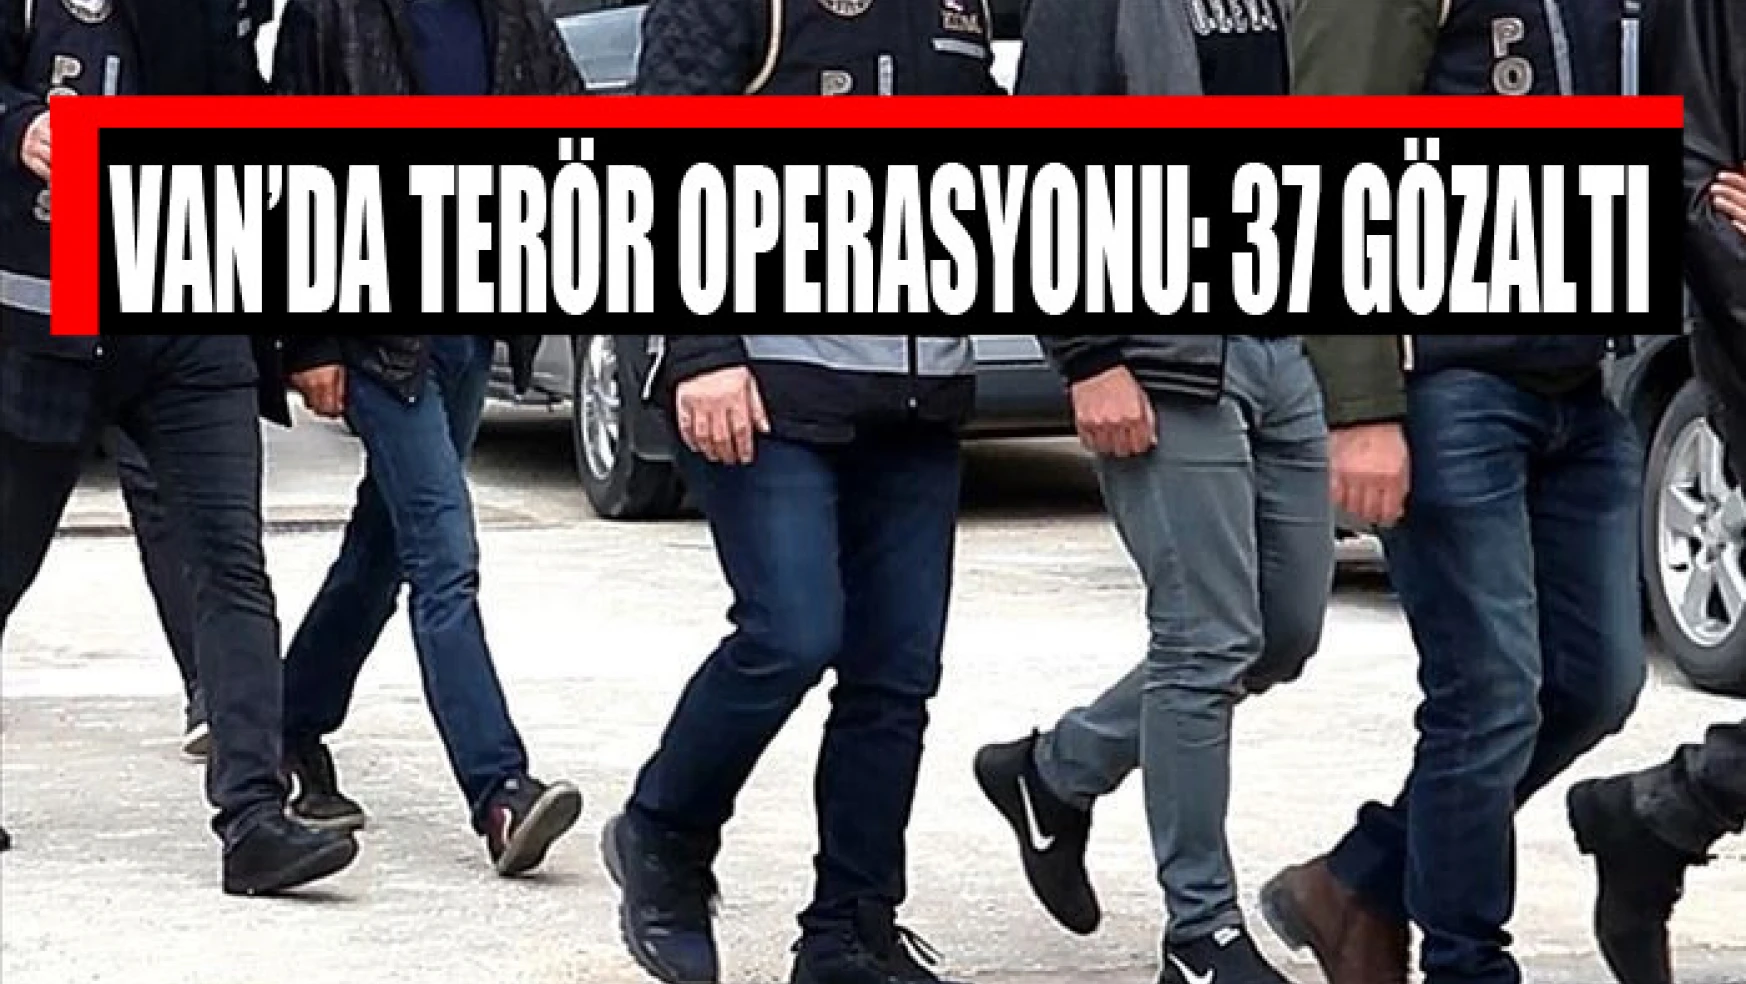 Van'da terör operasyonu: 37 gözaltı